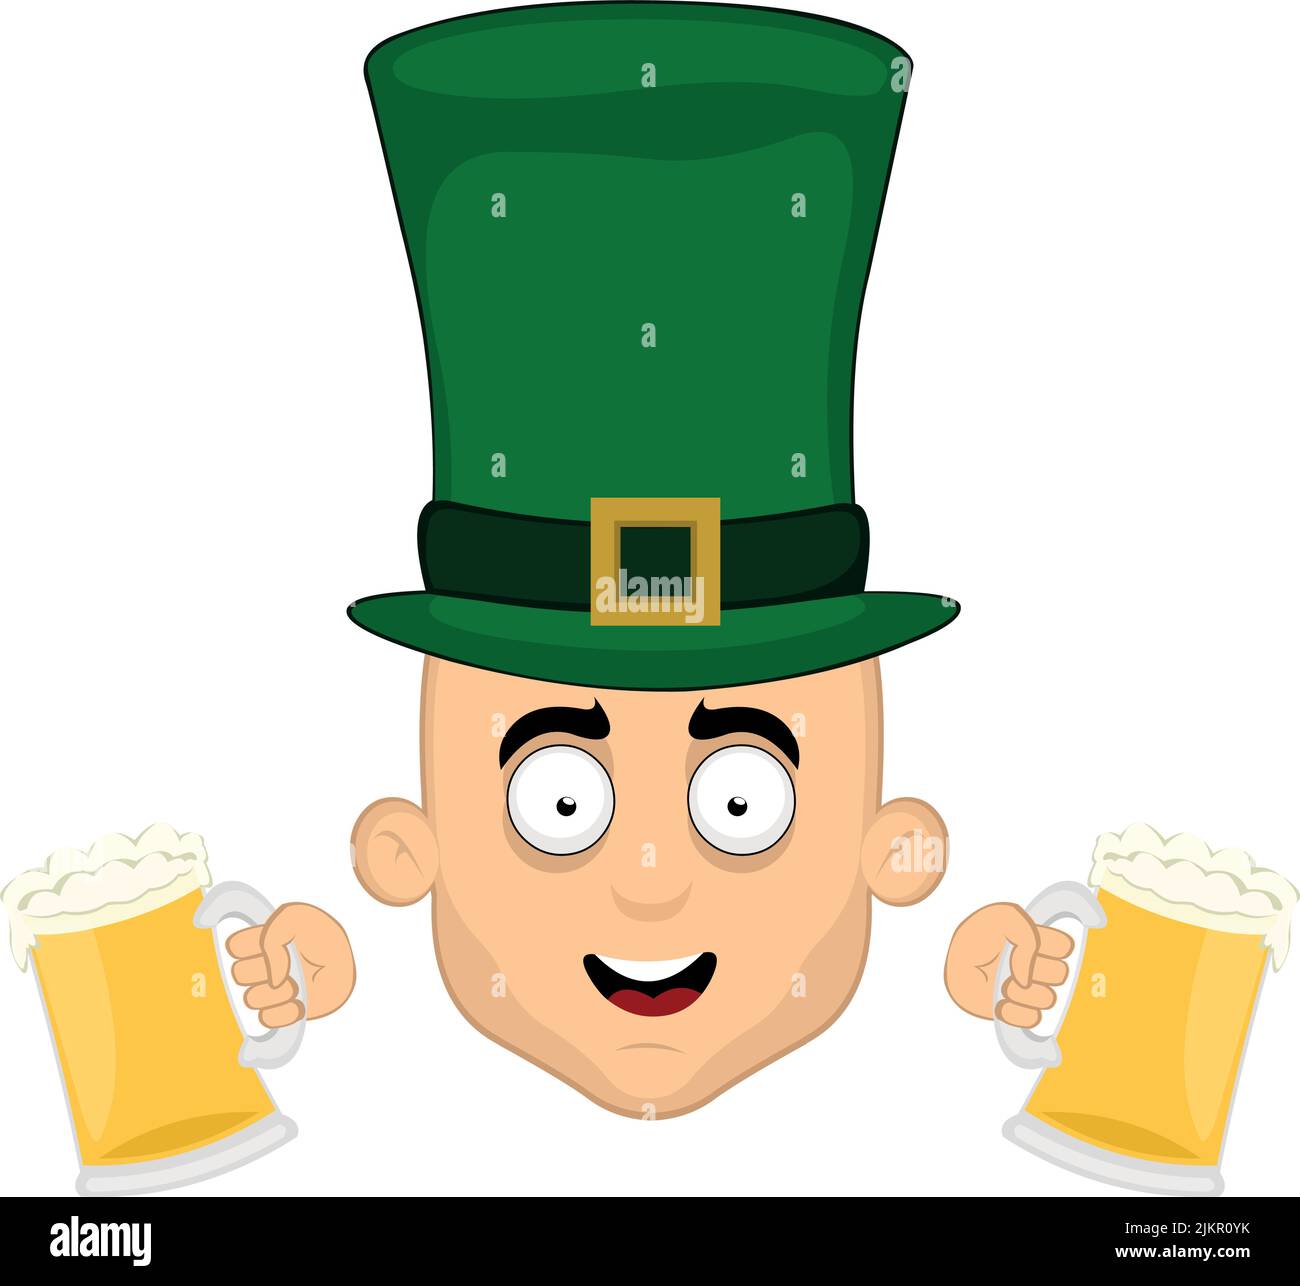 Illustrazione vettoriale del volto di un personaggio cartoon uomo, con un cappello di elfo sulla testa e due bicchieri di birra nelle mani, in commemorazione di okto Illustrazione Vettoriale